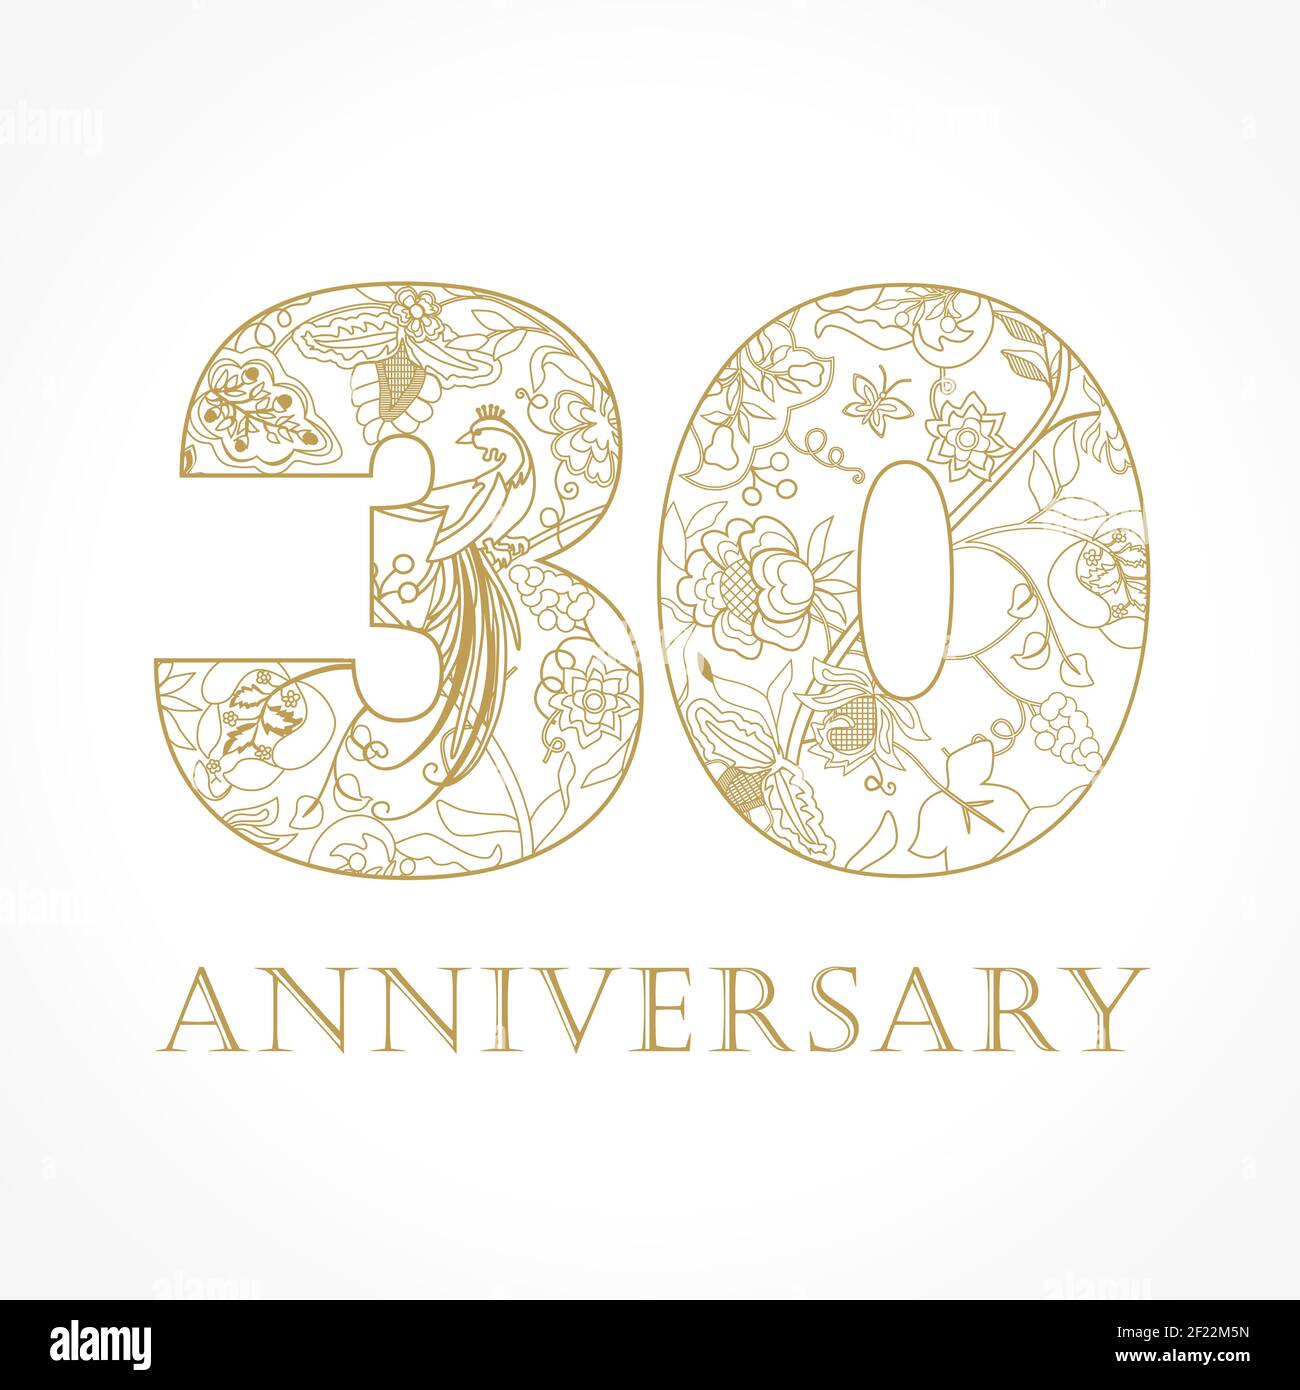 Kreatives Logo Konzept des 30th-jährigen Jubiläums in ethnischen Mustern und Paradiesvögeln. Isolierte abstrakte Grafik-Design-Vorlage. Top-30-Schild. Stock Vektor